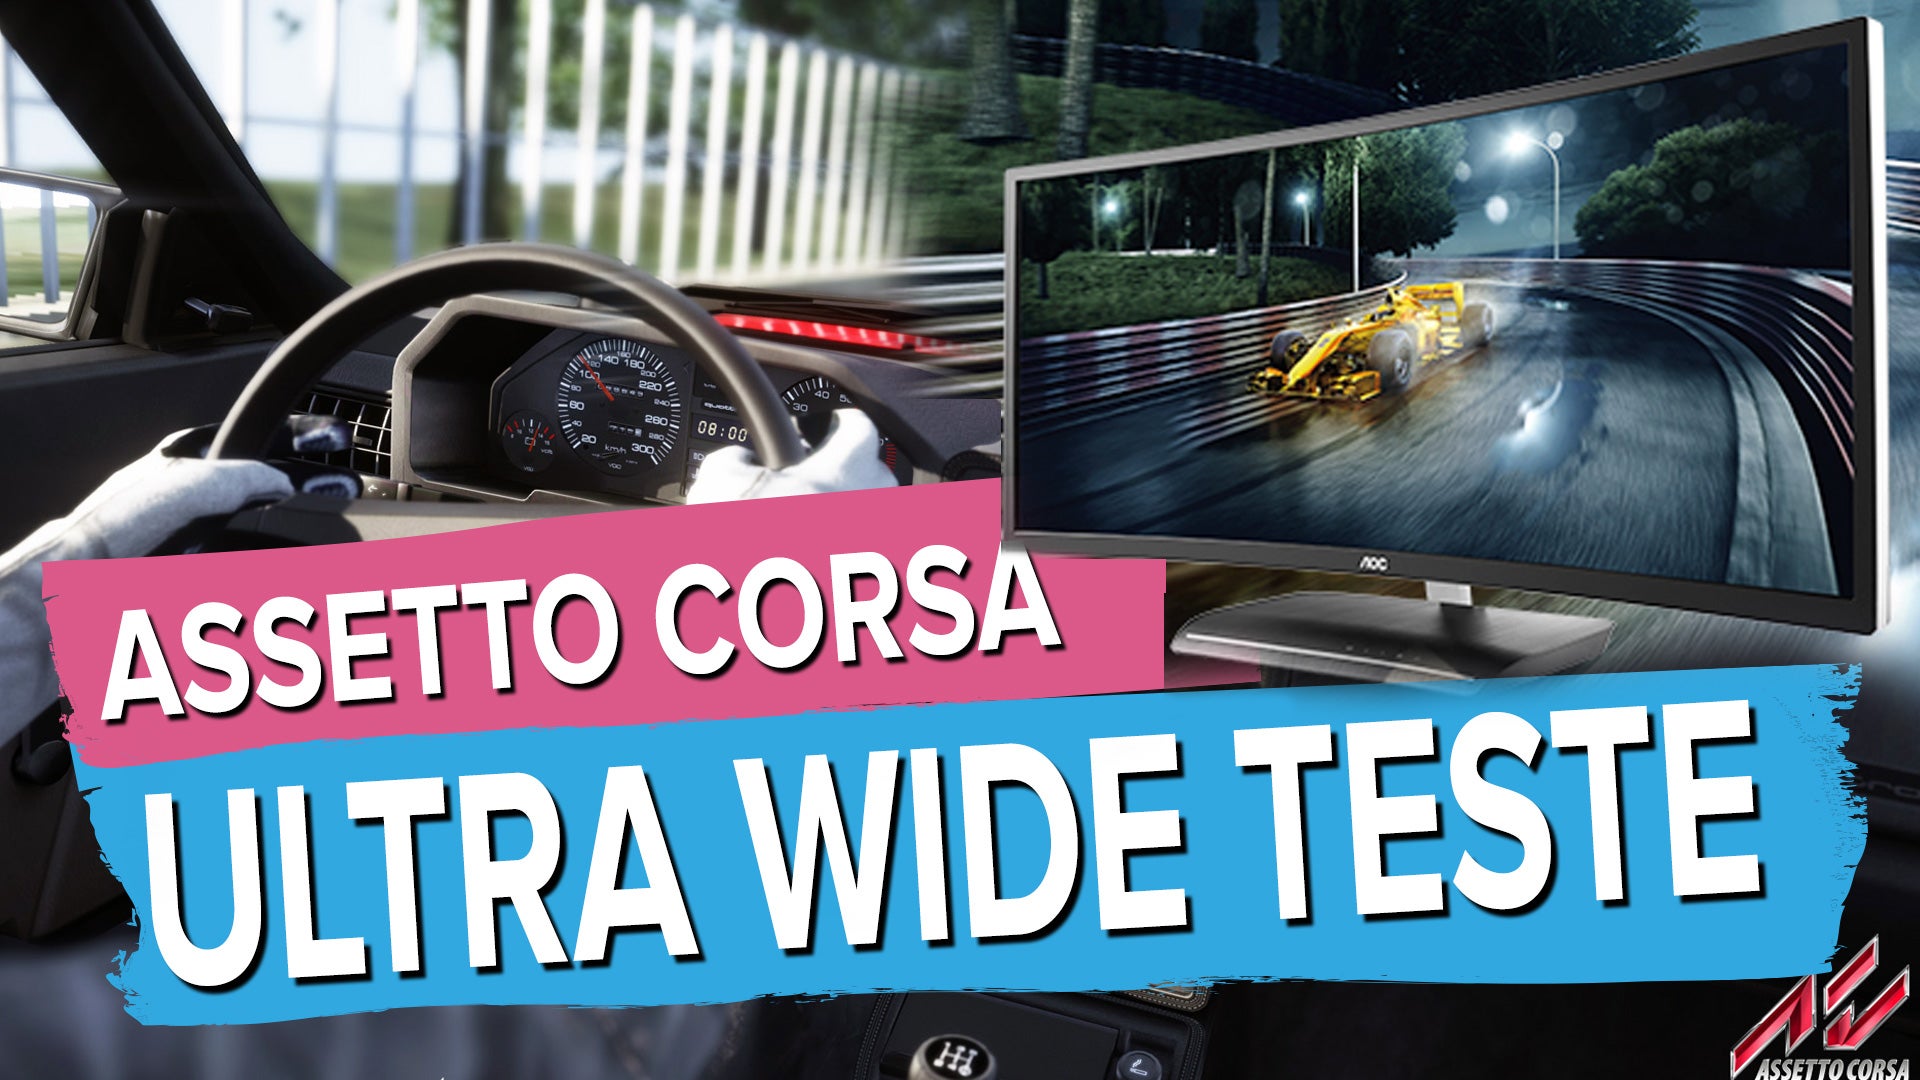 Imagem para Assetto Corsa - Ultra Wide (2560 x 1080) - Teste AOC 35"